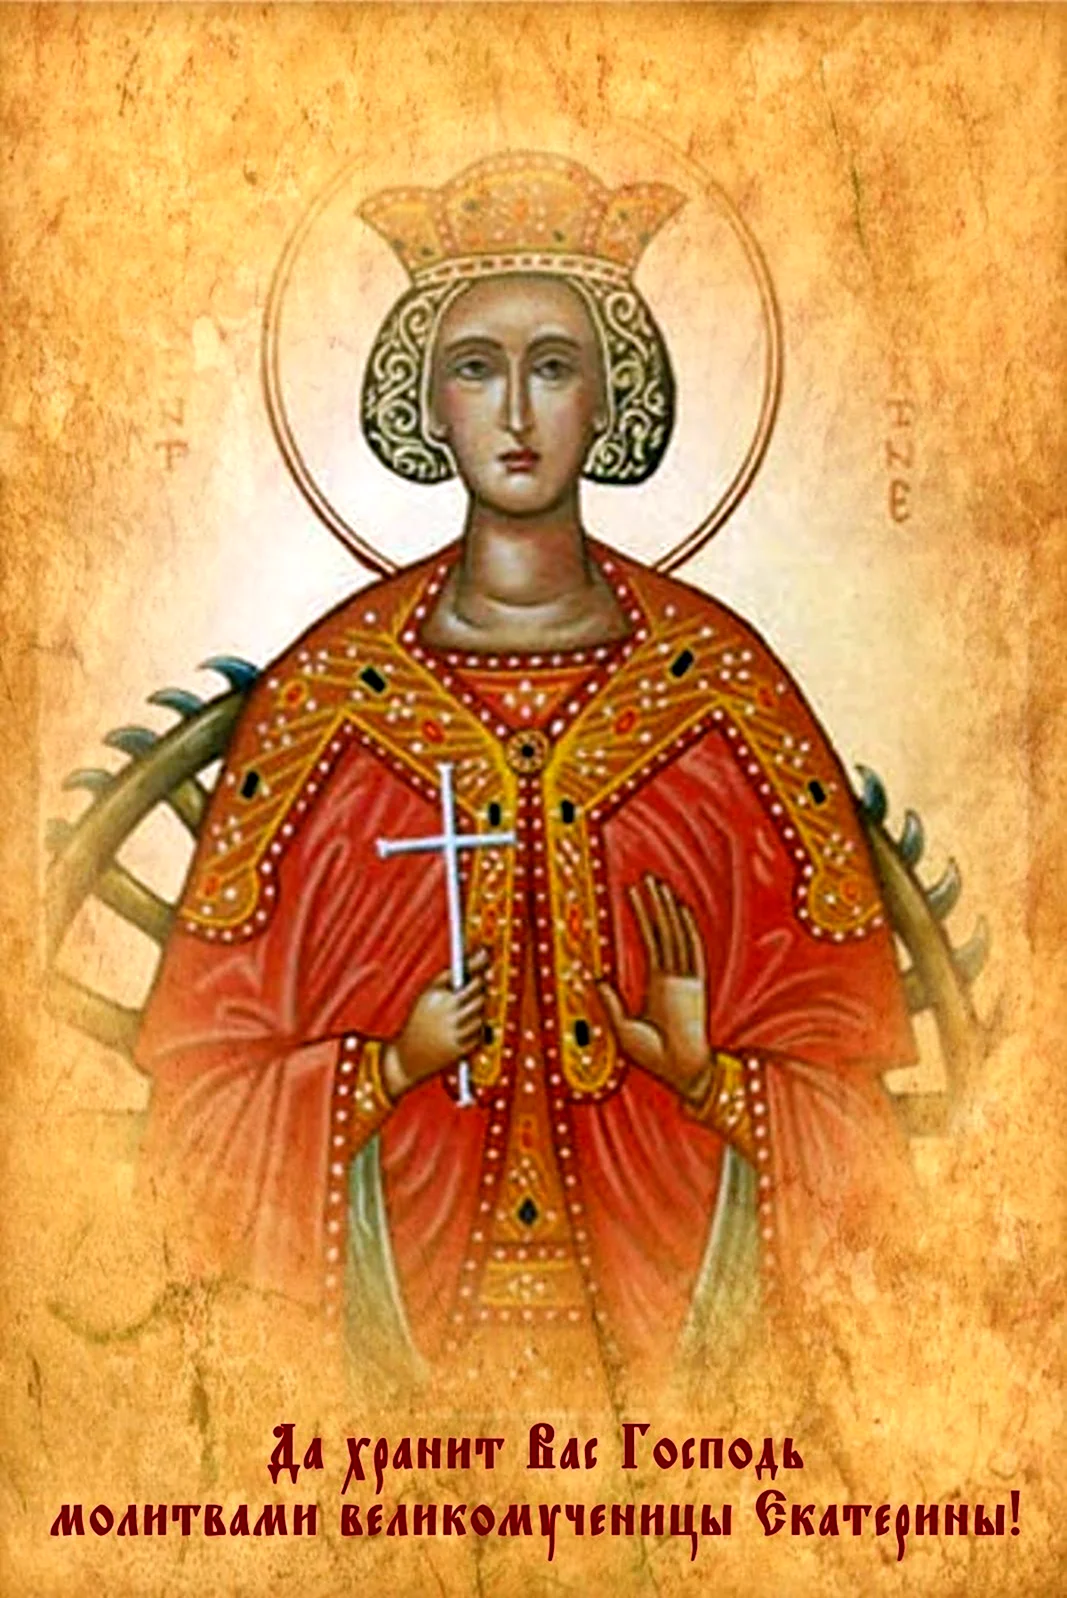 Святая Екатерина великомученица 7 декабря именины. Картинка